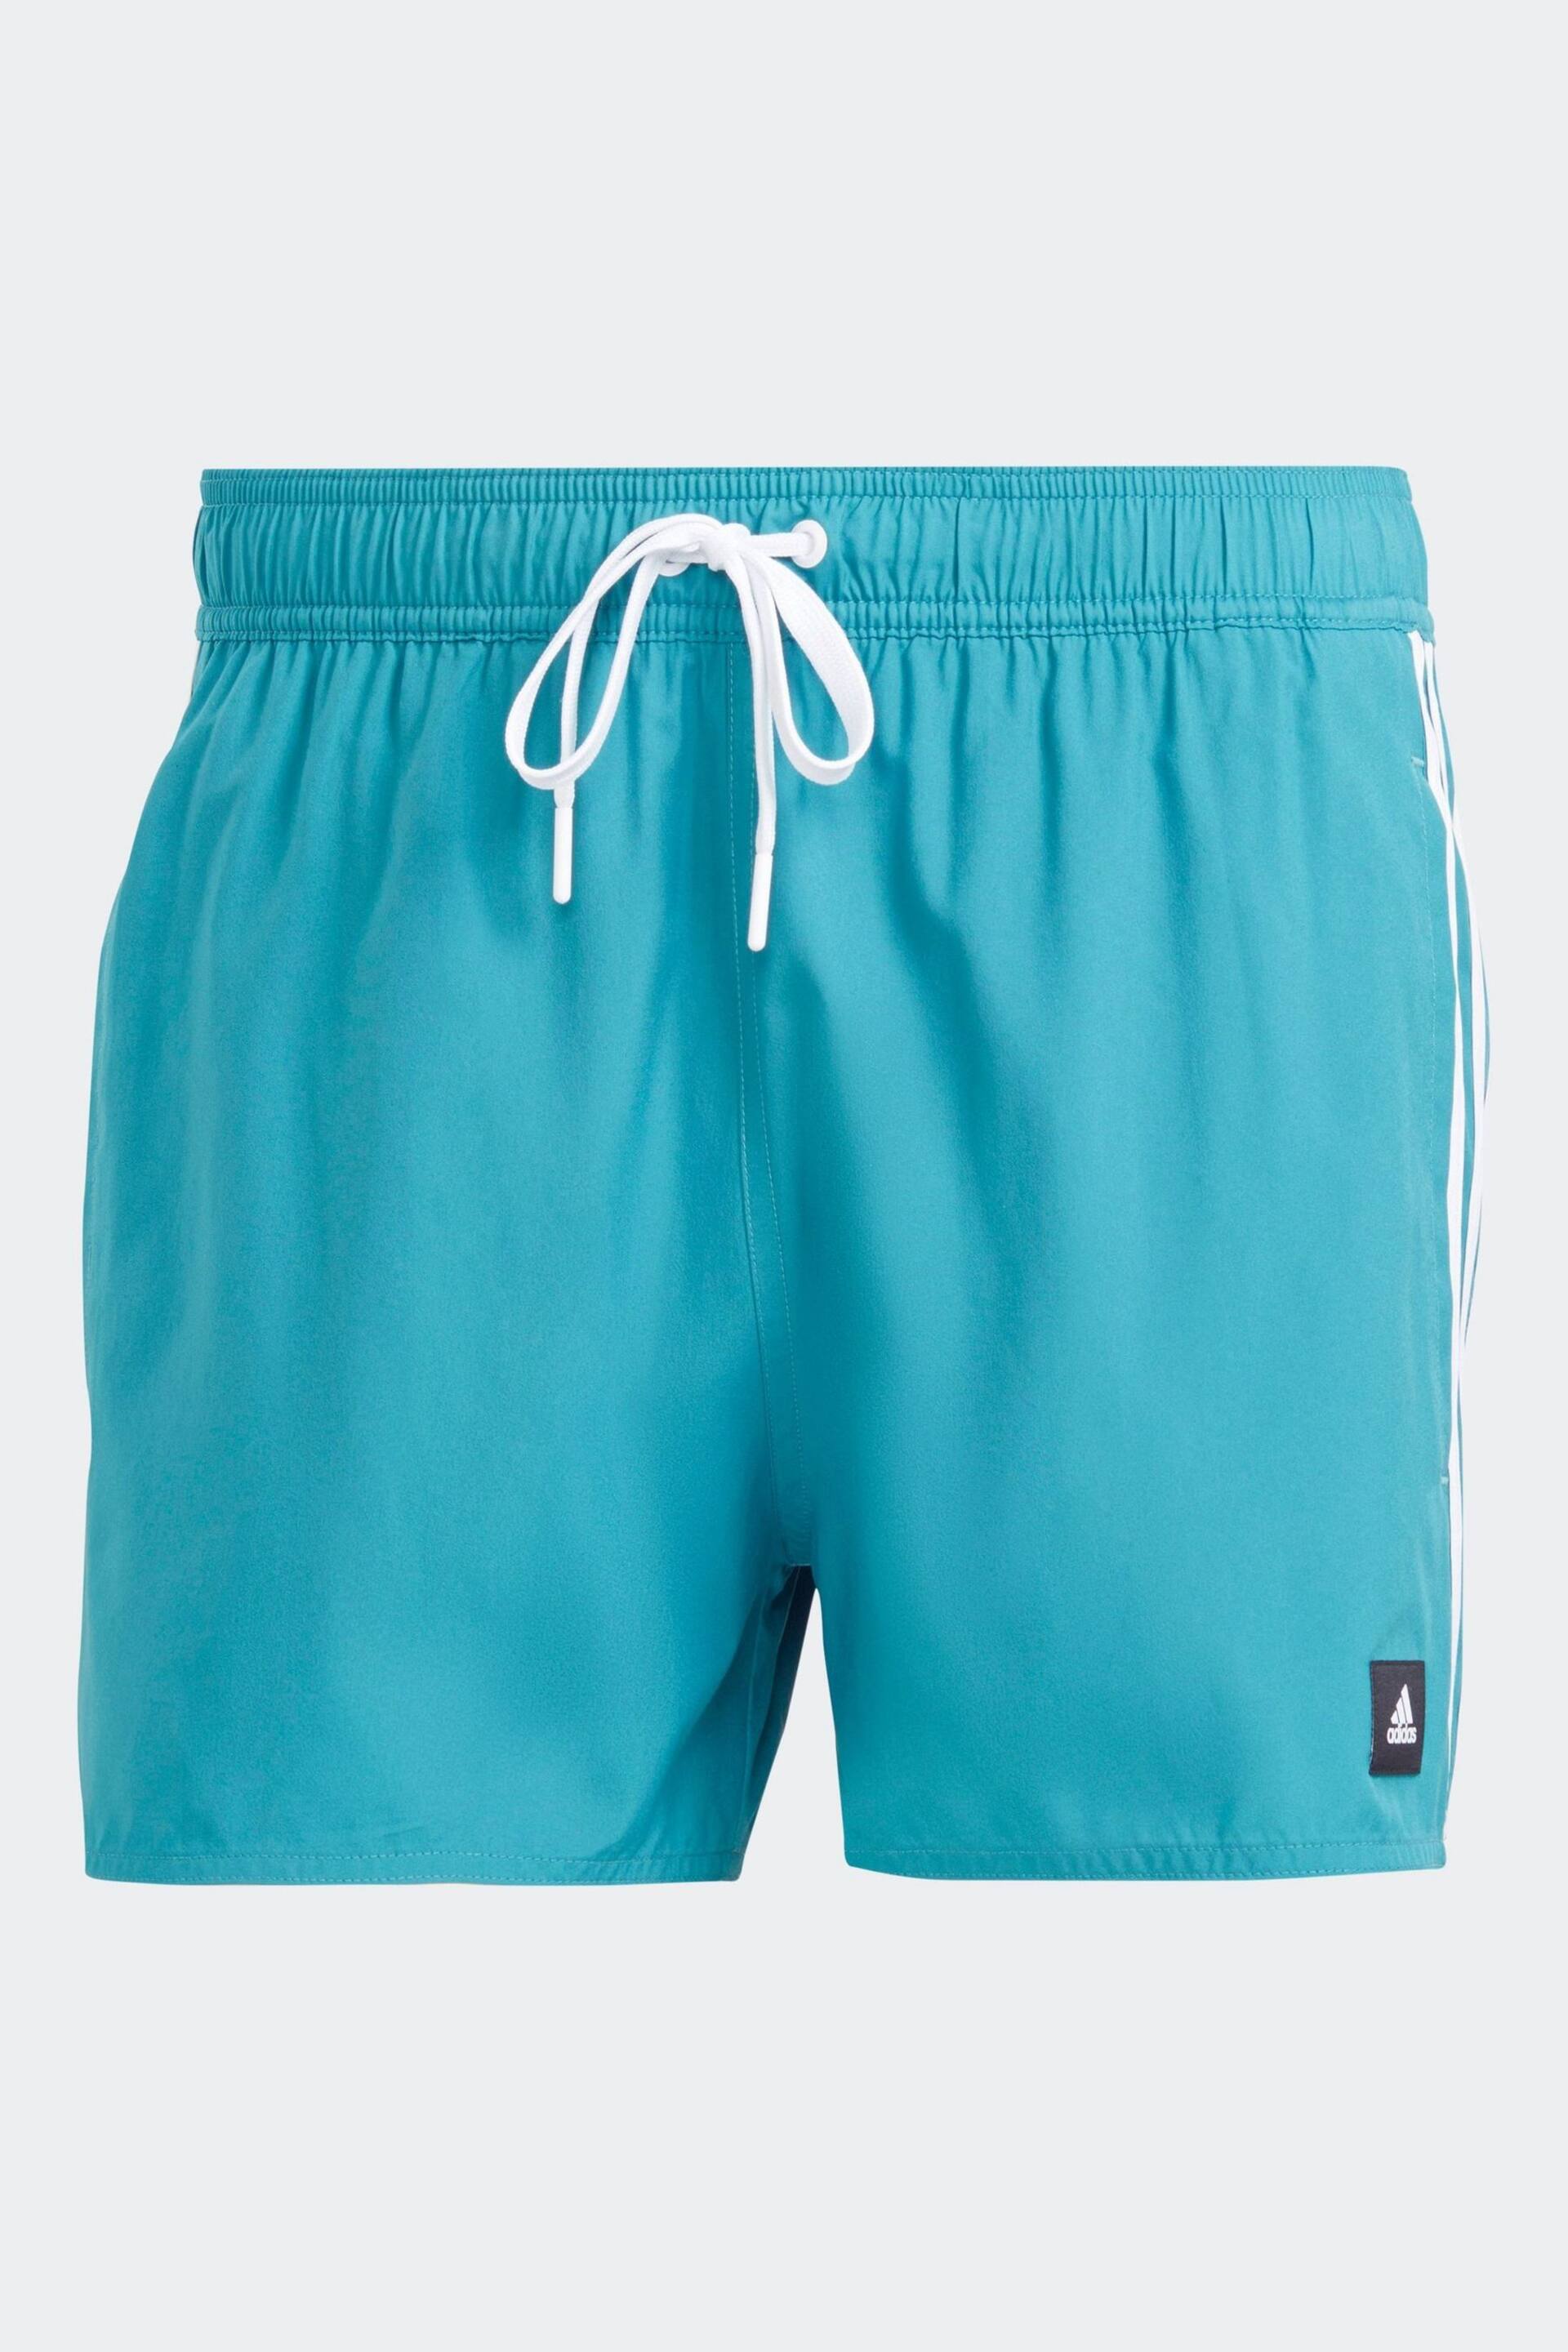 adidas Turquoise Blue 3-Stripes CLX Very Short Length Swim Shorts - Image 9 of 9